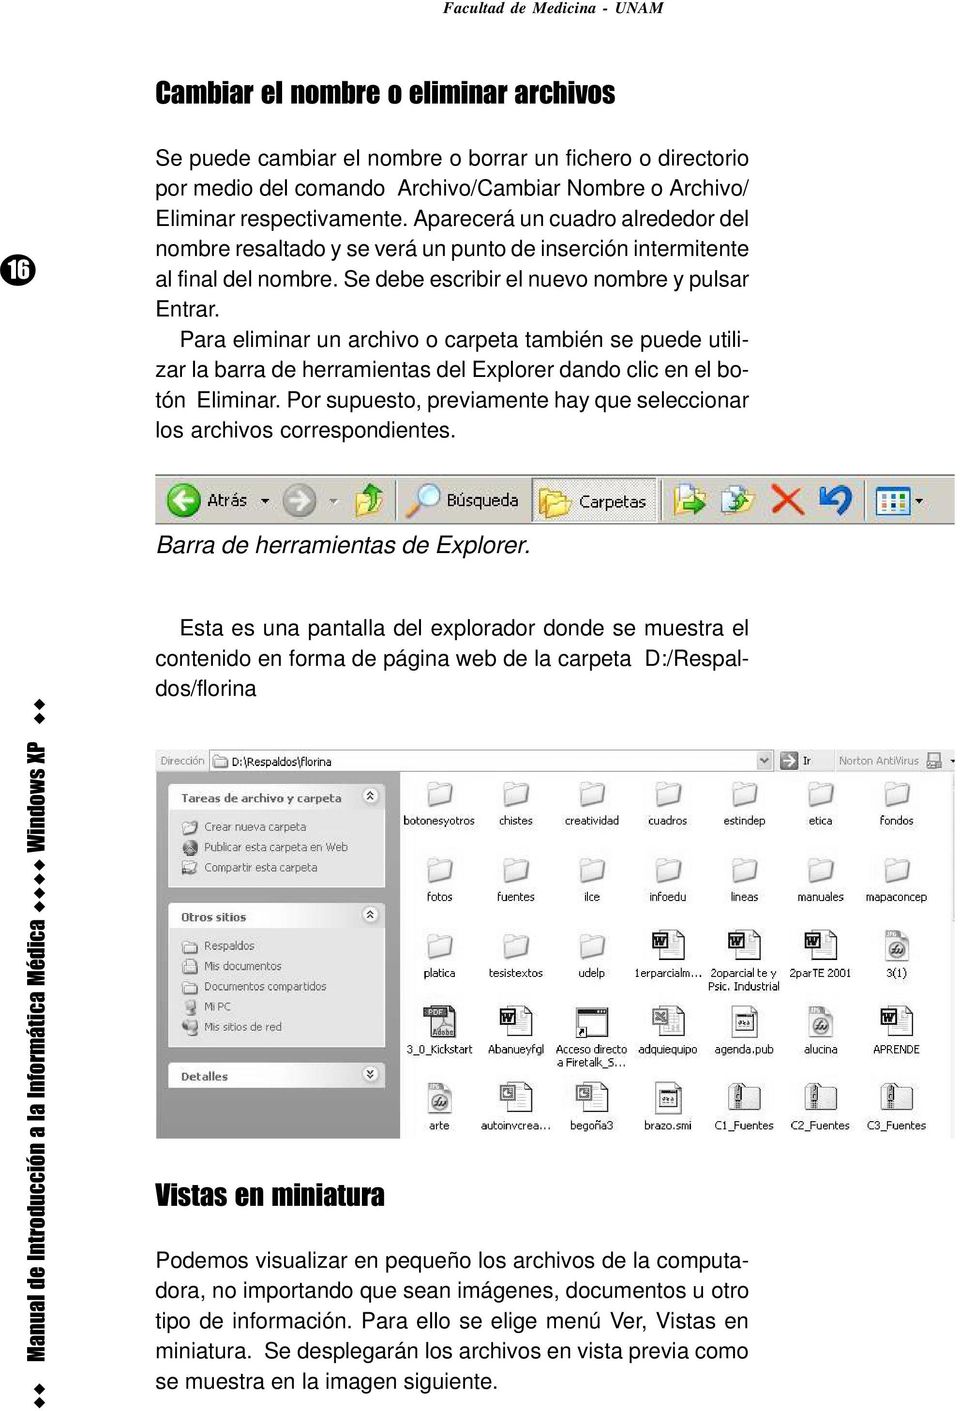 Para eliminar un archivo o carpeta también se puede utilizar la barra de herramientas del Explorer dando clic en el botón Eliminar.